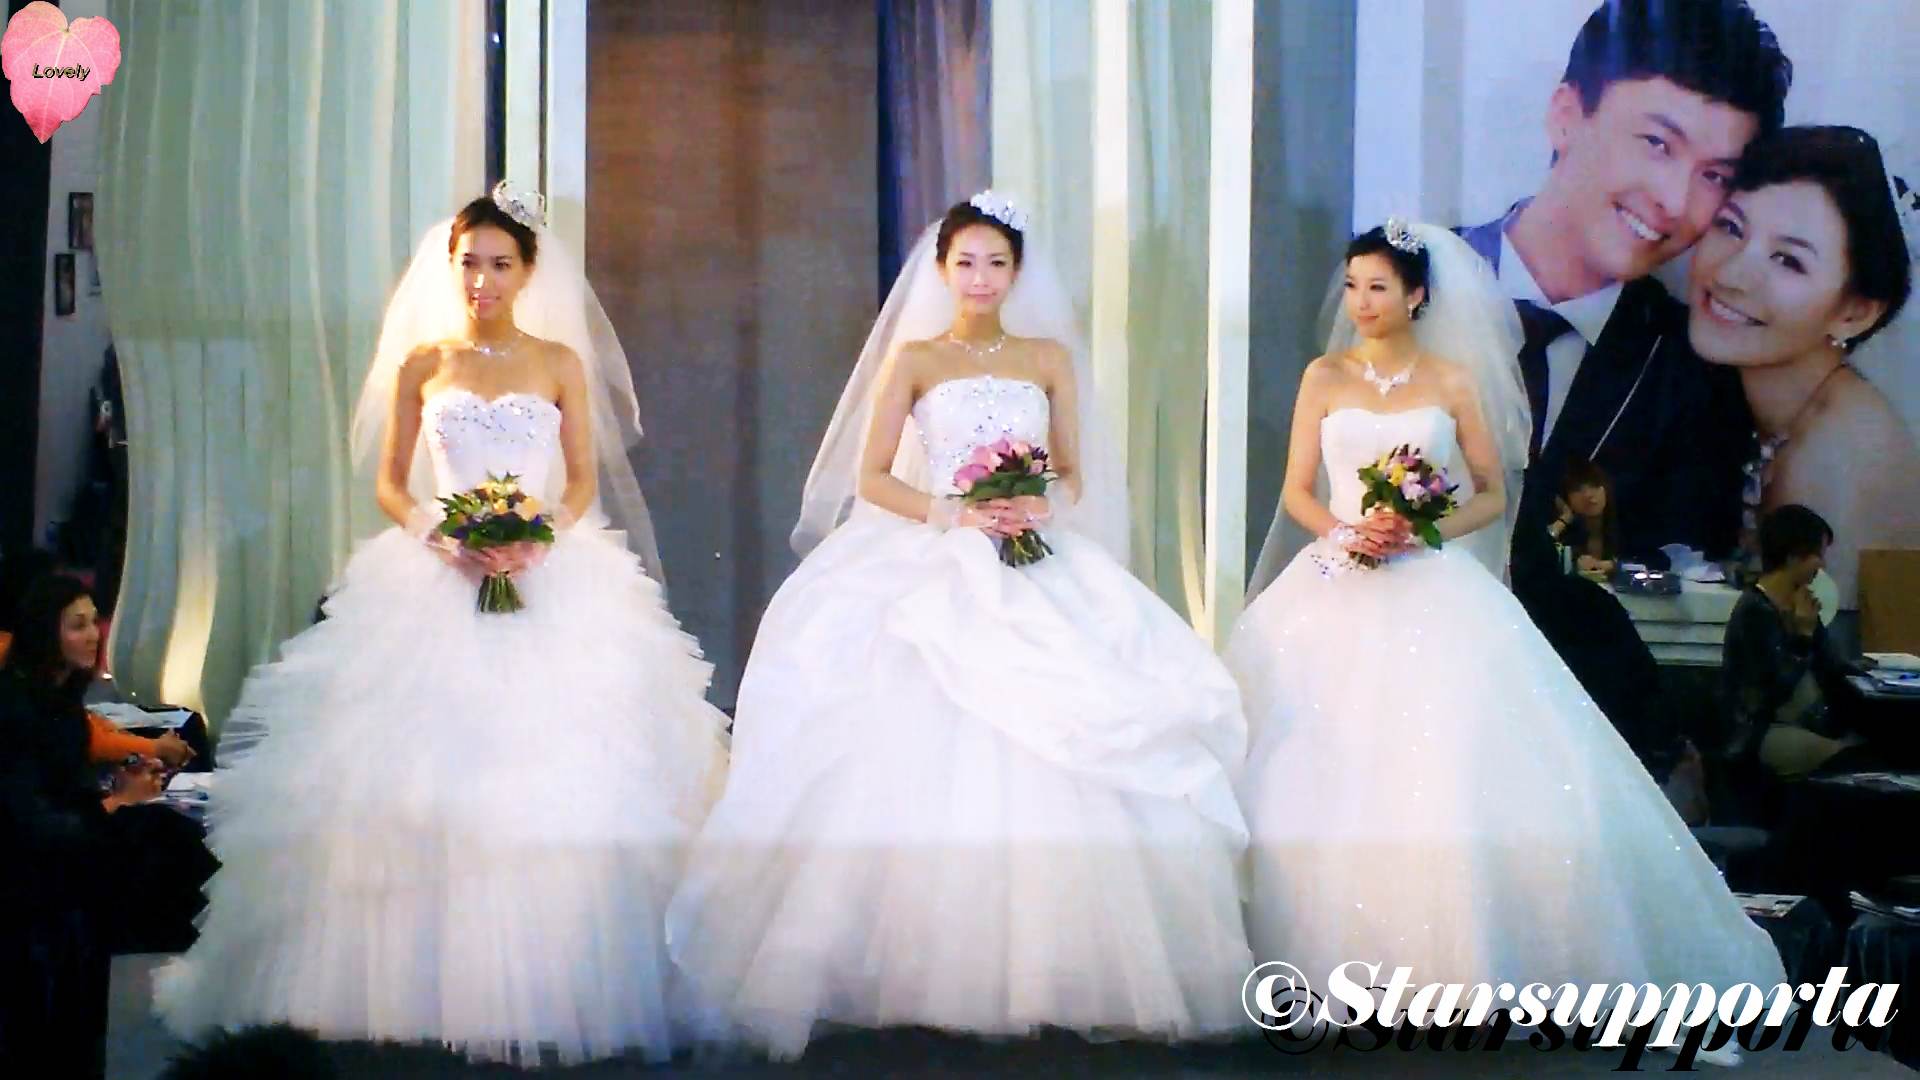 20111217 聖誔婚紗、婚宴及結婚服務博覽 - Mona Lisa @ 香港會議展覽中心 HKCEC (video)